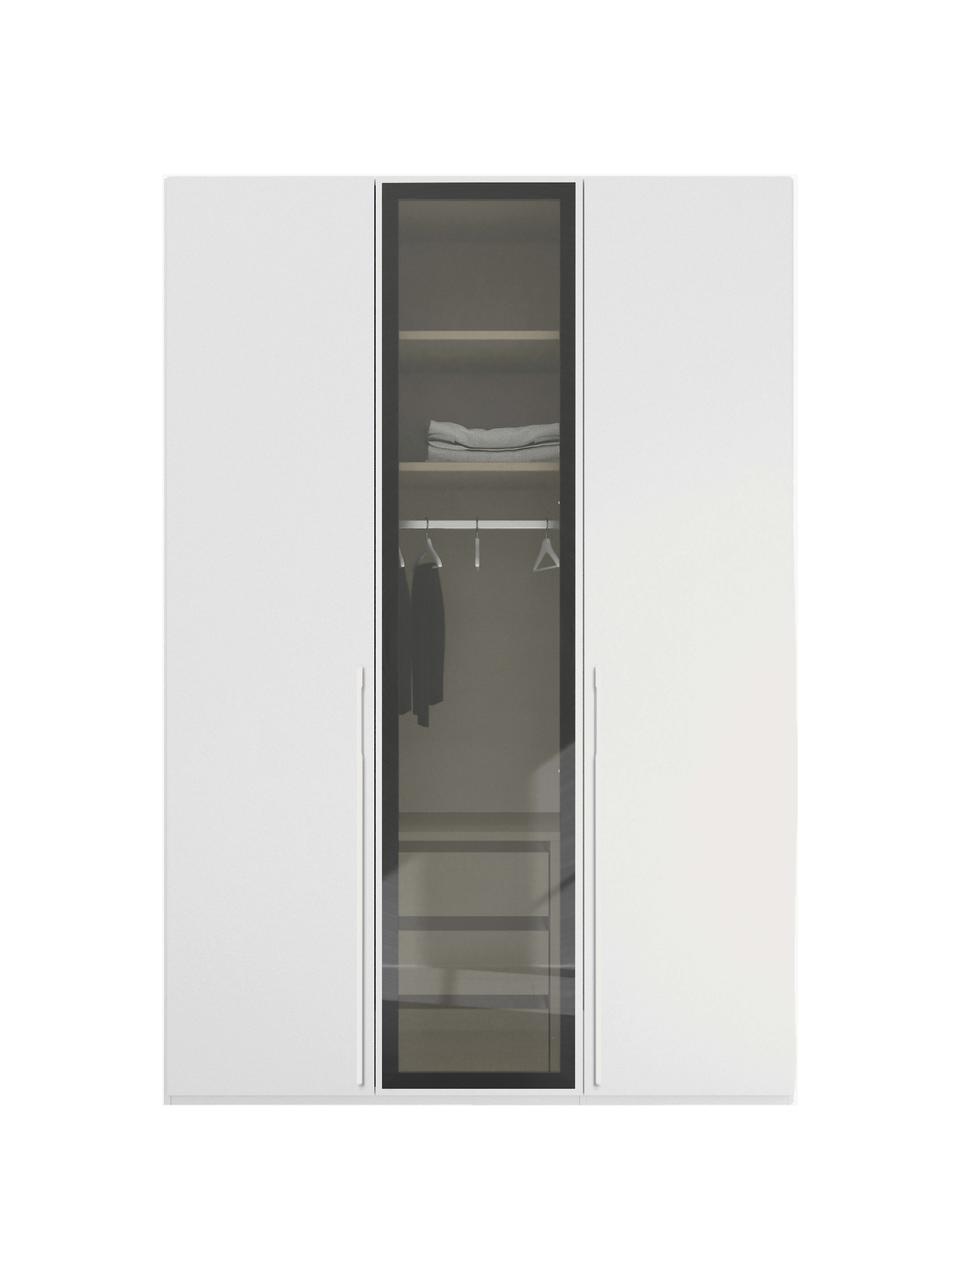 Drehtürenschrank Skat Shine mit beleuchteten Glastüren, Griffe: Metall, beschichtet, Weiß, B 151 x H 235 cm